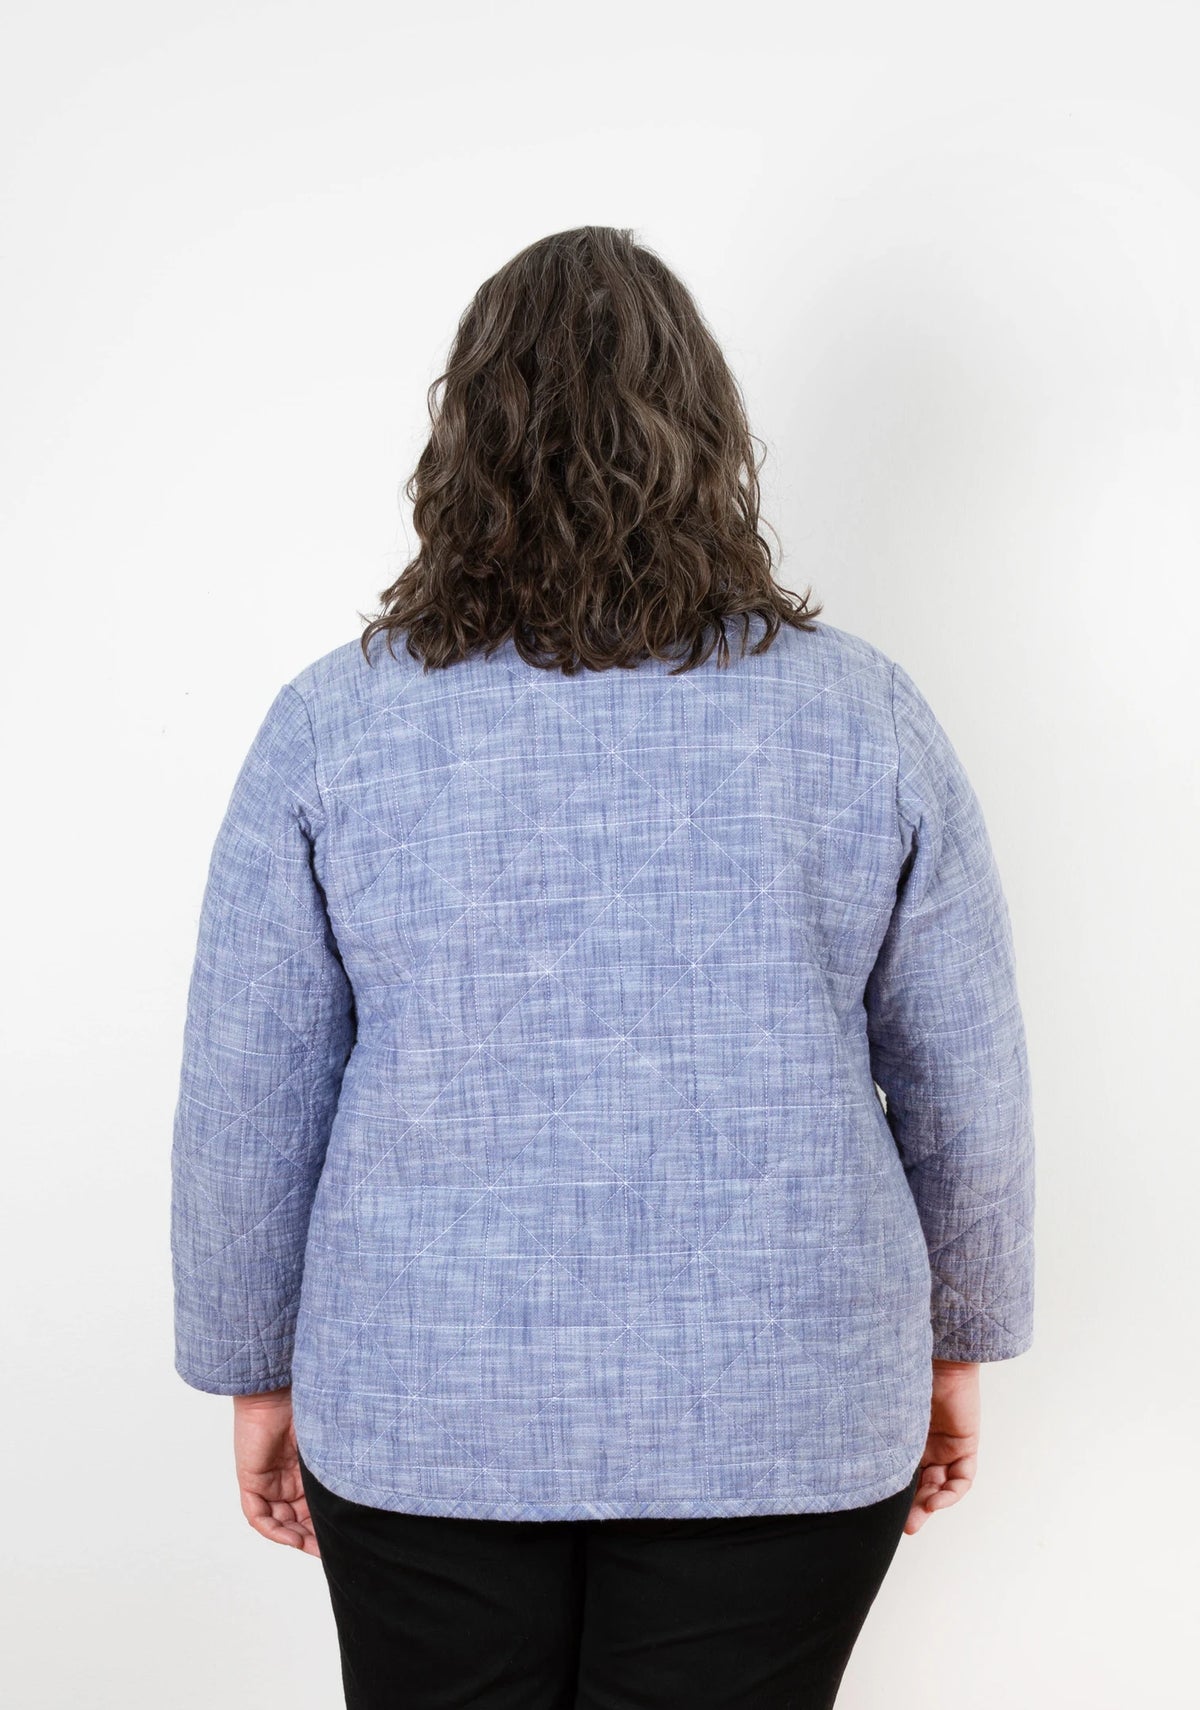 Tamarack Jacket Sewing Pattern by Grainline Studio